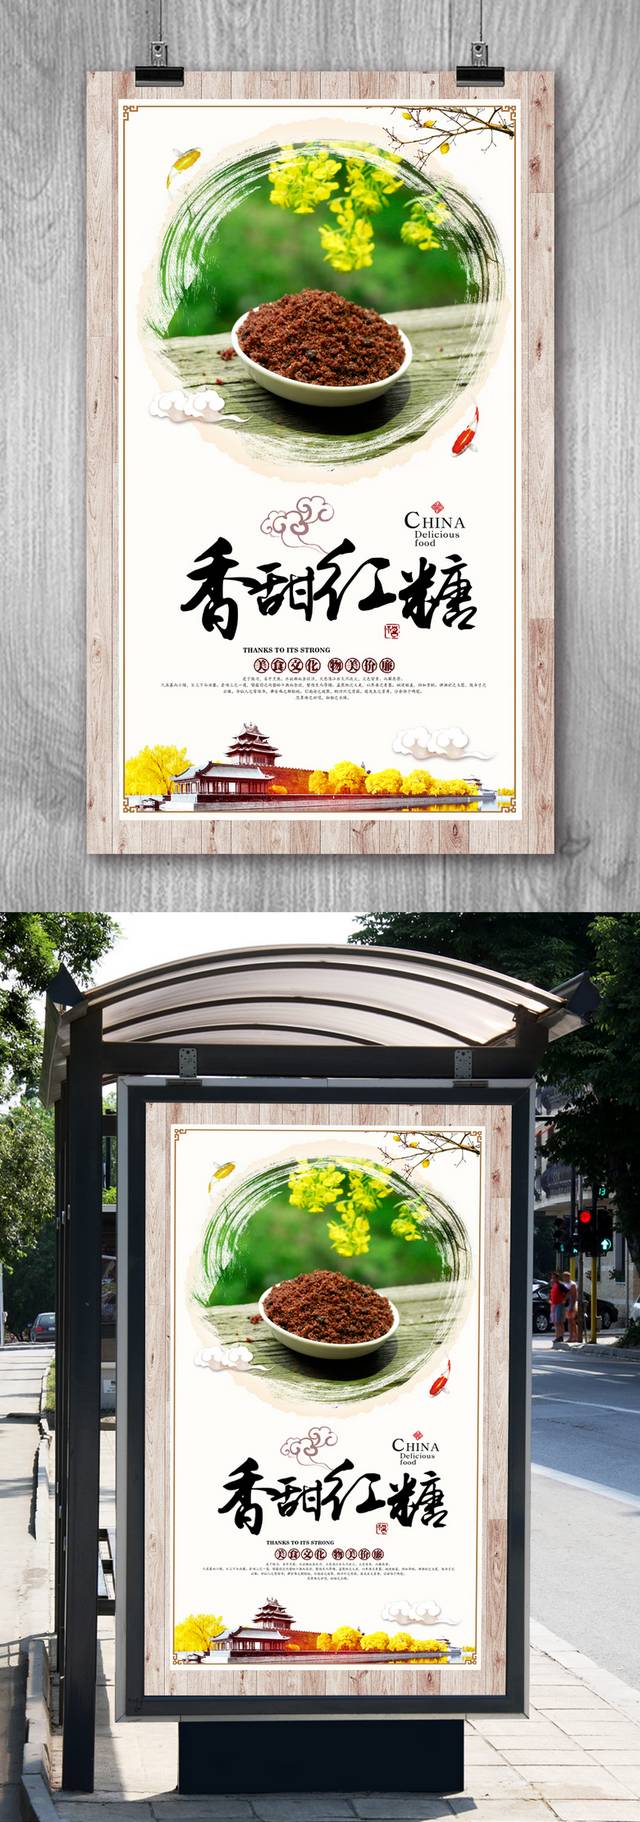 中国风调味品红糖促销海报设计